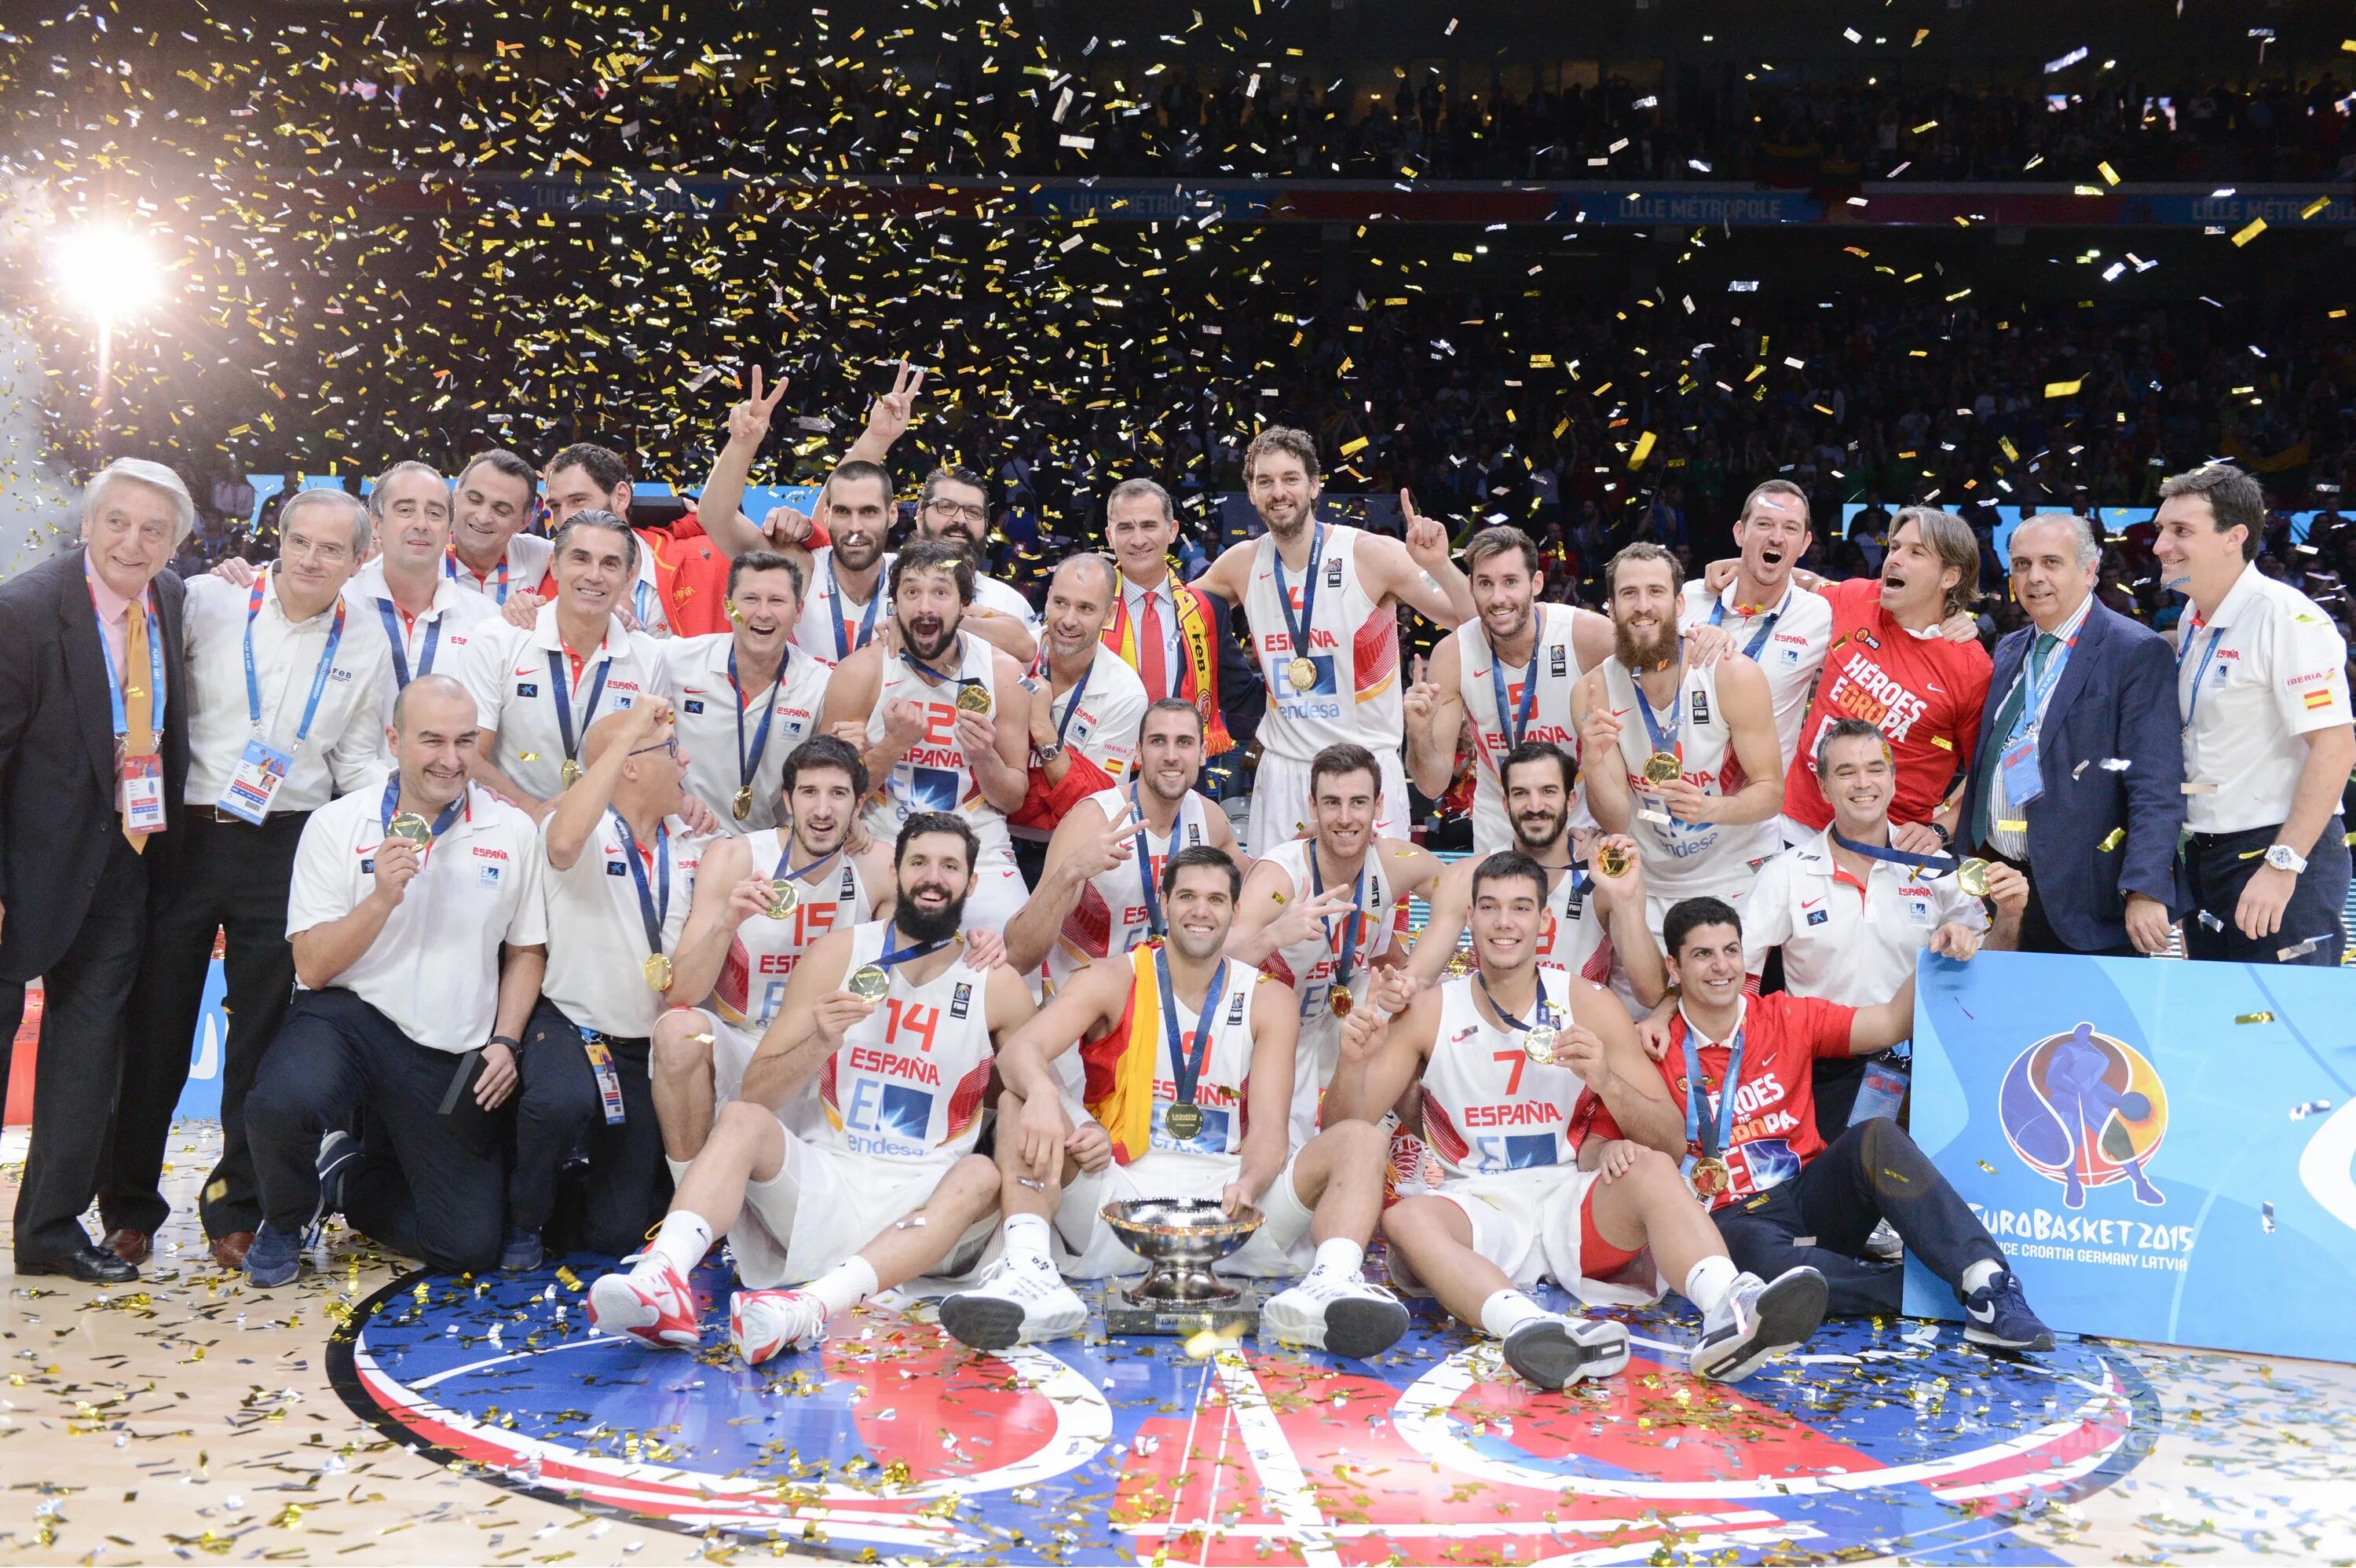 Сборная по баскетболу 2015. Какая команда по баскетболу стала первым чемпионом Европы?. Европа 2015 год